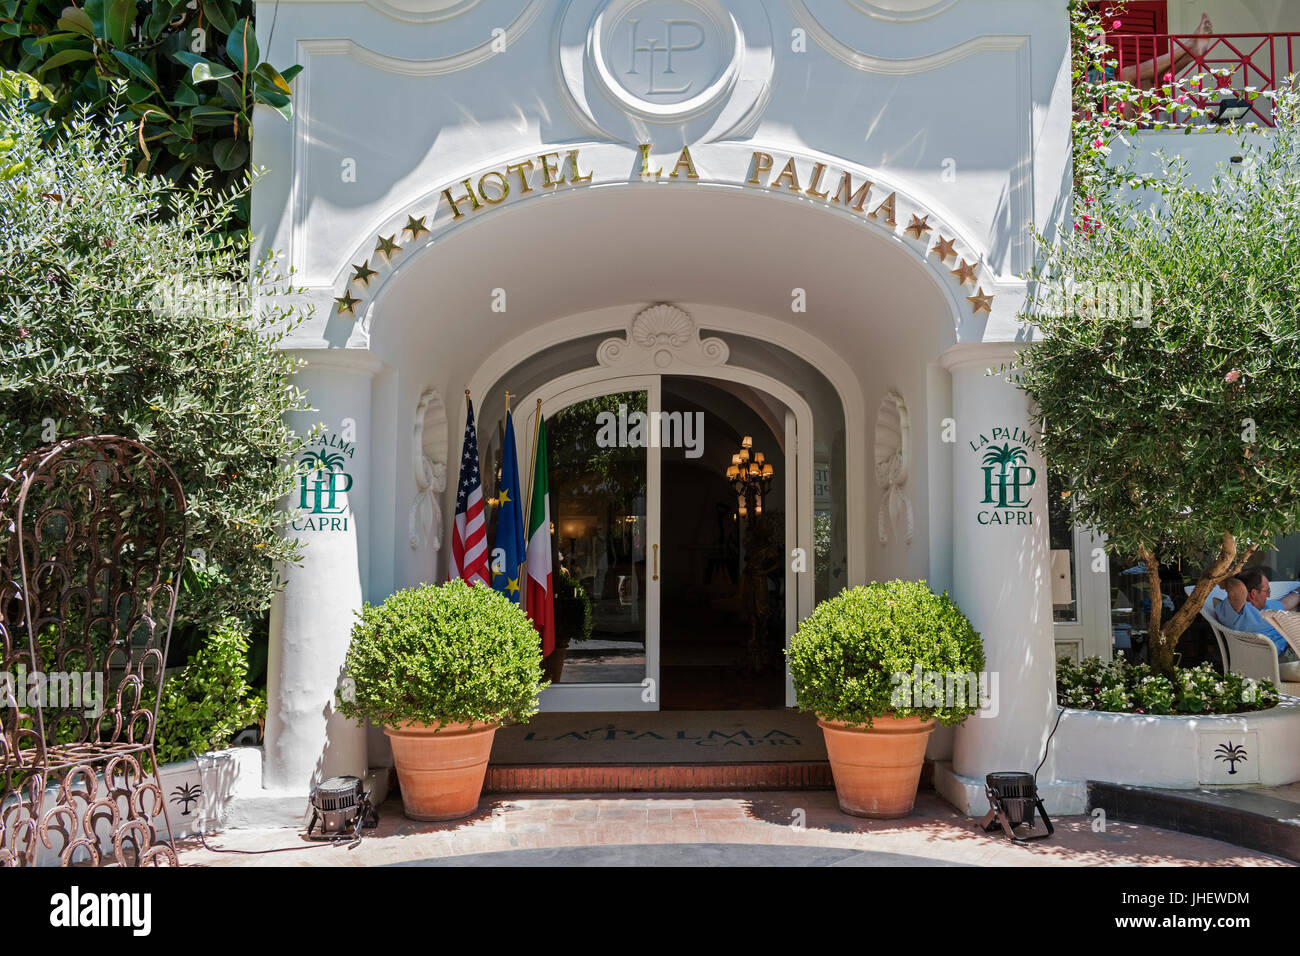 Das vier-Sterne-Hotel La Palma ist das älteste Hotel auf der Insel Capri. Stockfoto